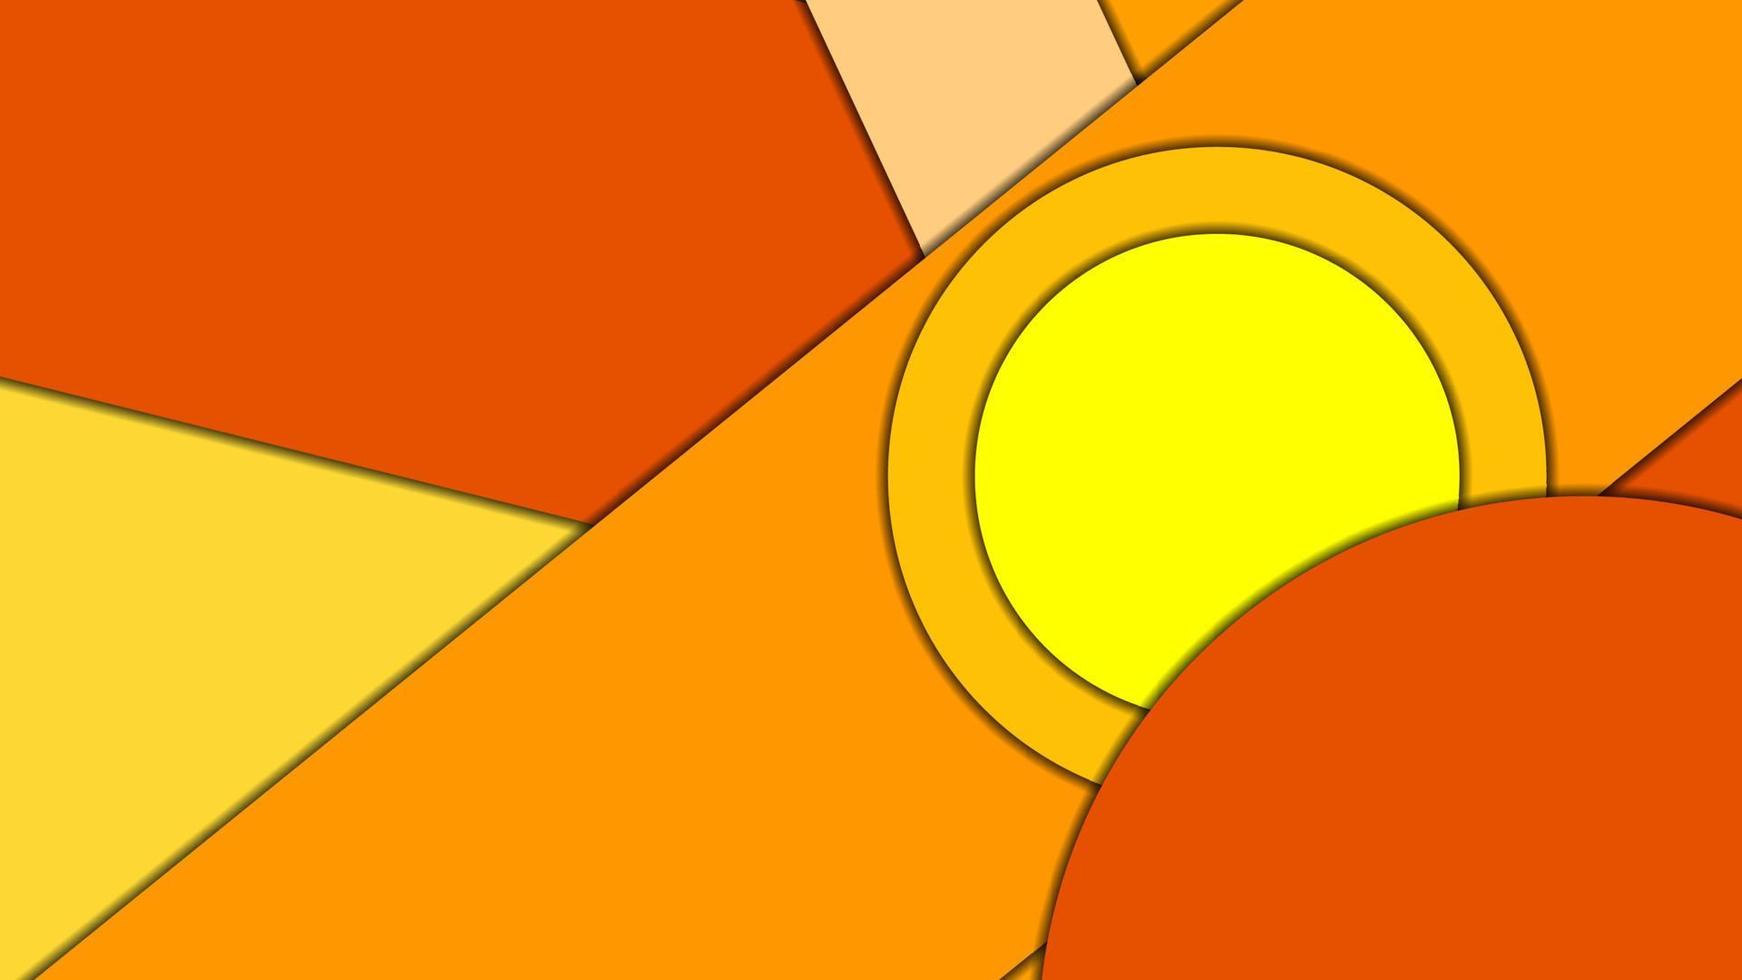 arrière-plan vectoriel géométrique abstrait dans un style de conception matérielle avec une palette harmonisée limitée, avec des cercles concentriques et des rectangles tournés avec des ombres, imitant le papier découpé.